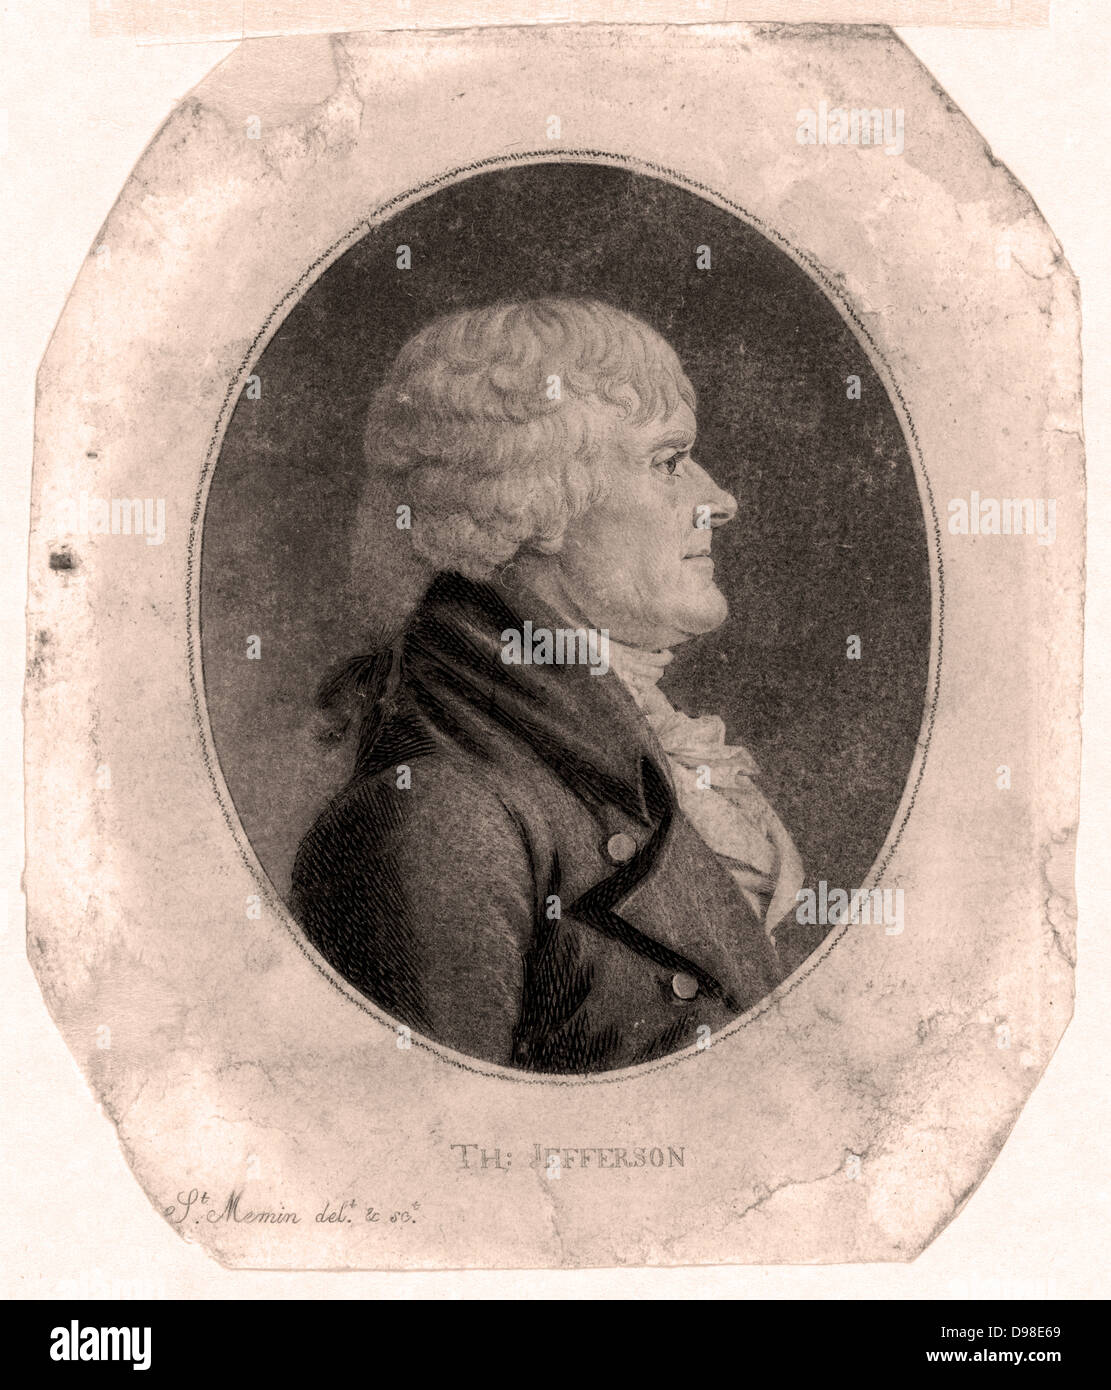 Thomas Jefferson (1743-1826), terzo presidente degli Stati Uniti, 1801-1809. Litografia di Jefferson, in piedi, punti per una copia della dichiarazione di indipendenza americana di cui egli è stato uno degli autori. Sulla sinistra è una statica della macchina elettrica. Foto Stock